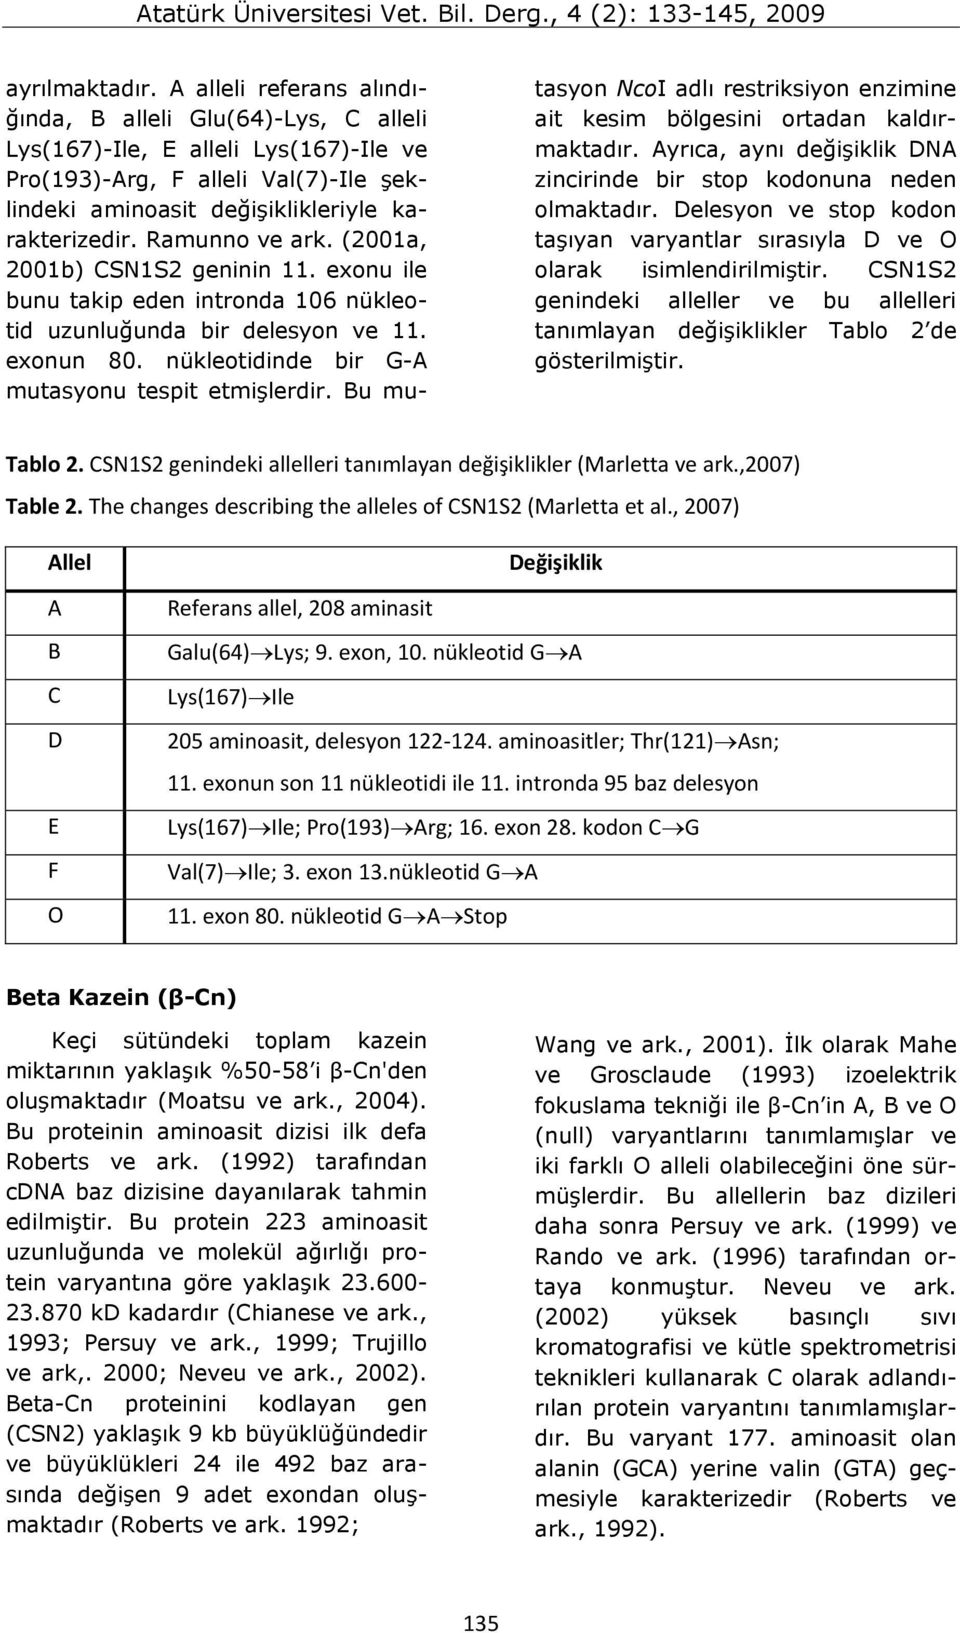 Ramunno ve ark. (2001a, 2001b) CSN1S2 geninin 11. exonu ile bunu takip eden intronda 106 nükleotid uzunluğunda bir delesyon ve 11. exonun 80. nükleotidinde bir G-A mutasyonu tespit etmişlerdir.